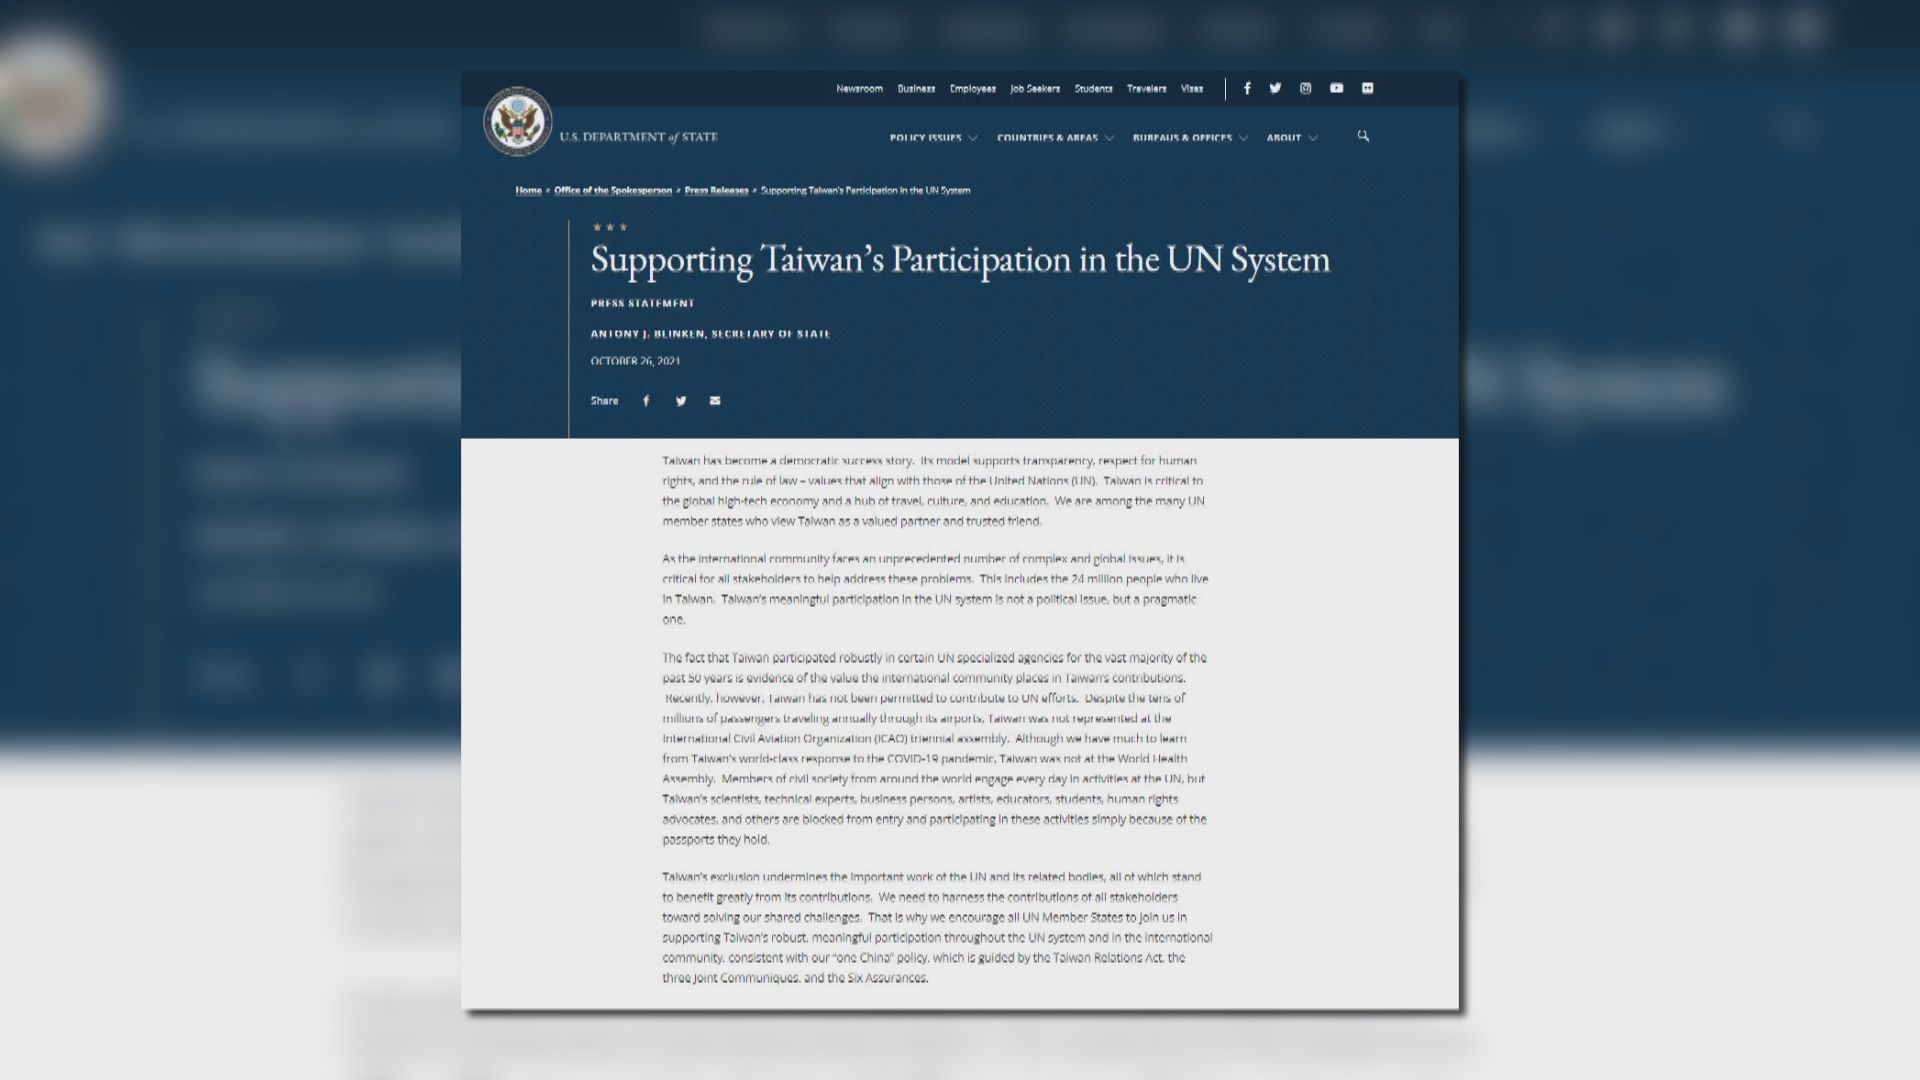 布林肯呼籲支持台灣參與聯合國體系